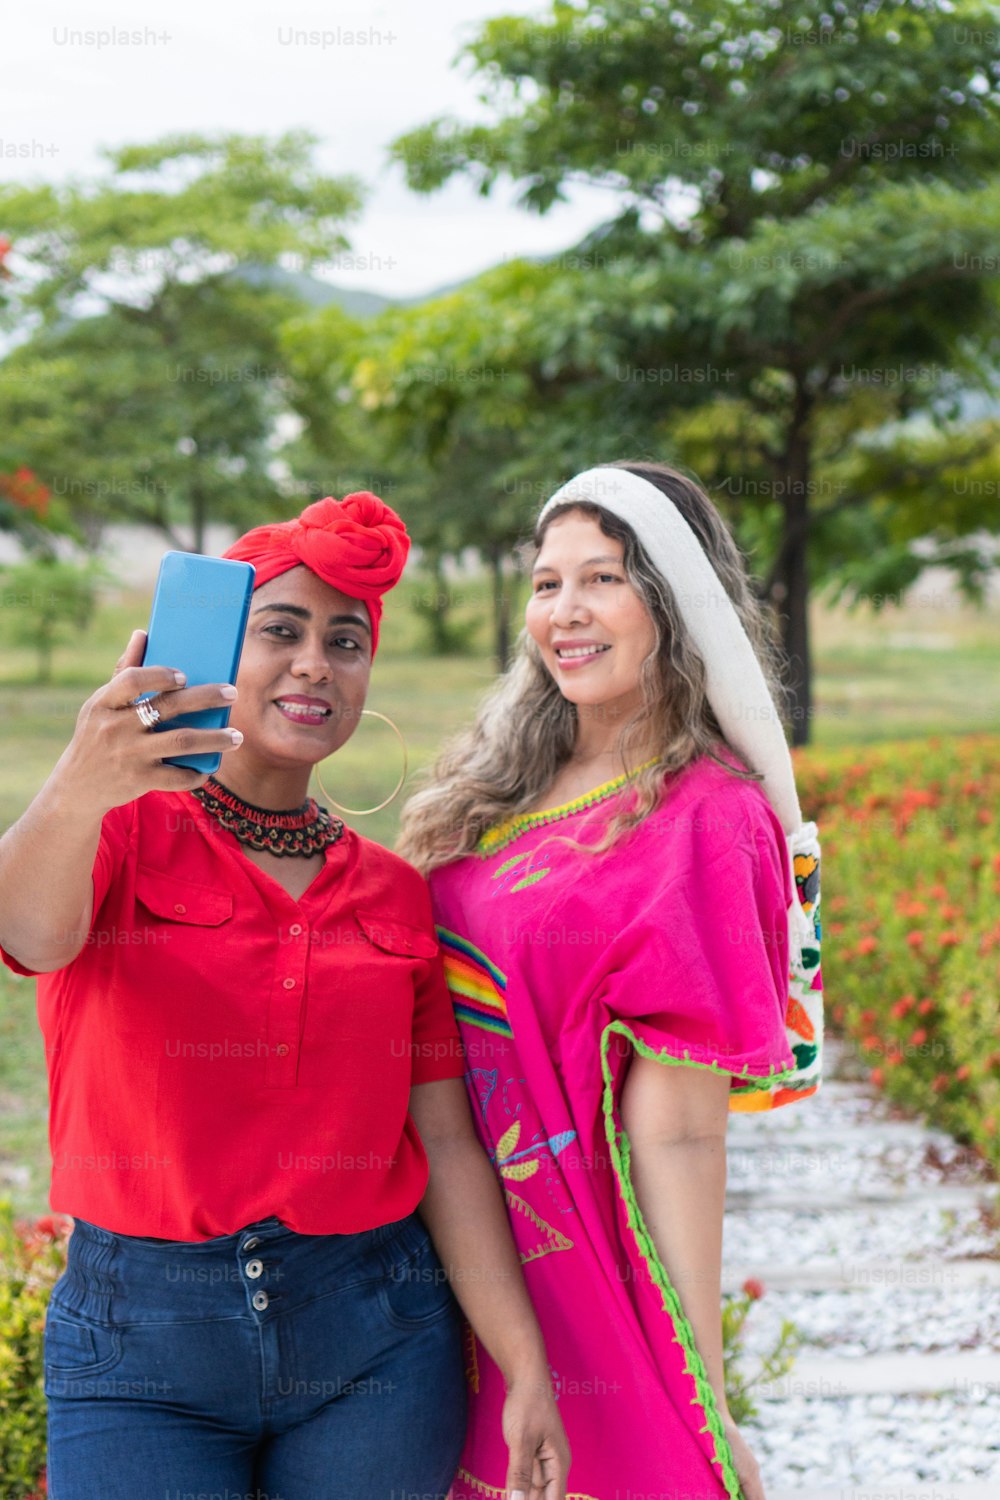 Two indigenou women taking a selfie in a park